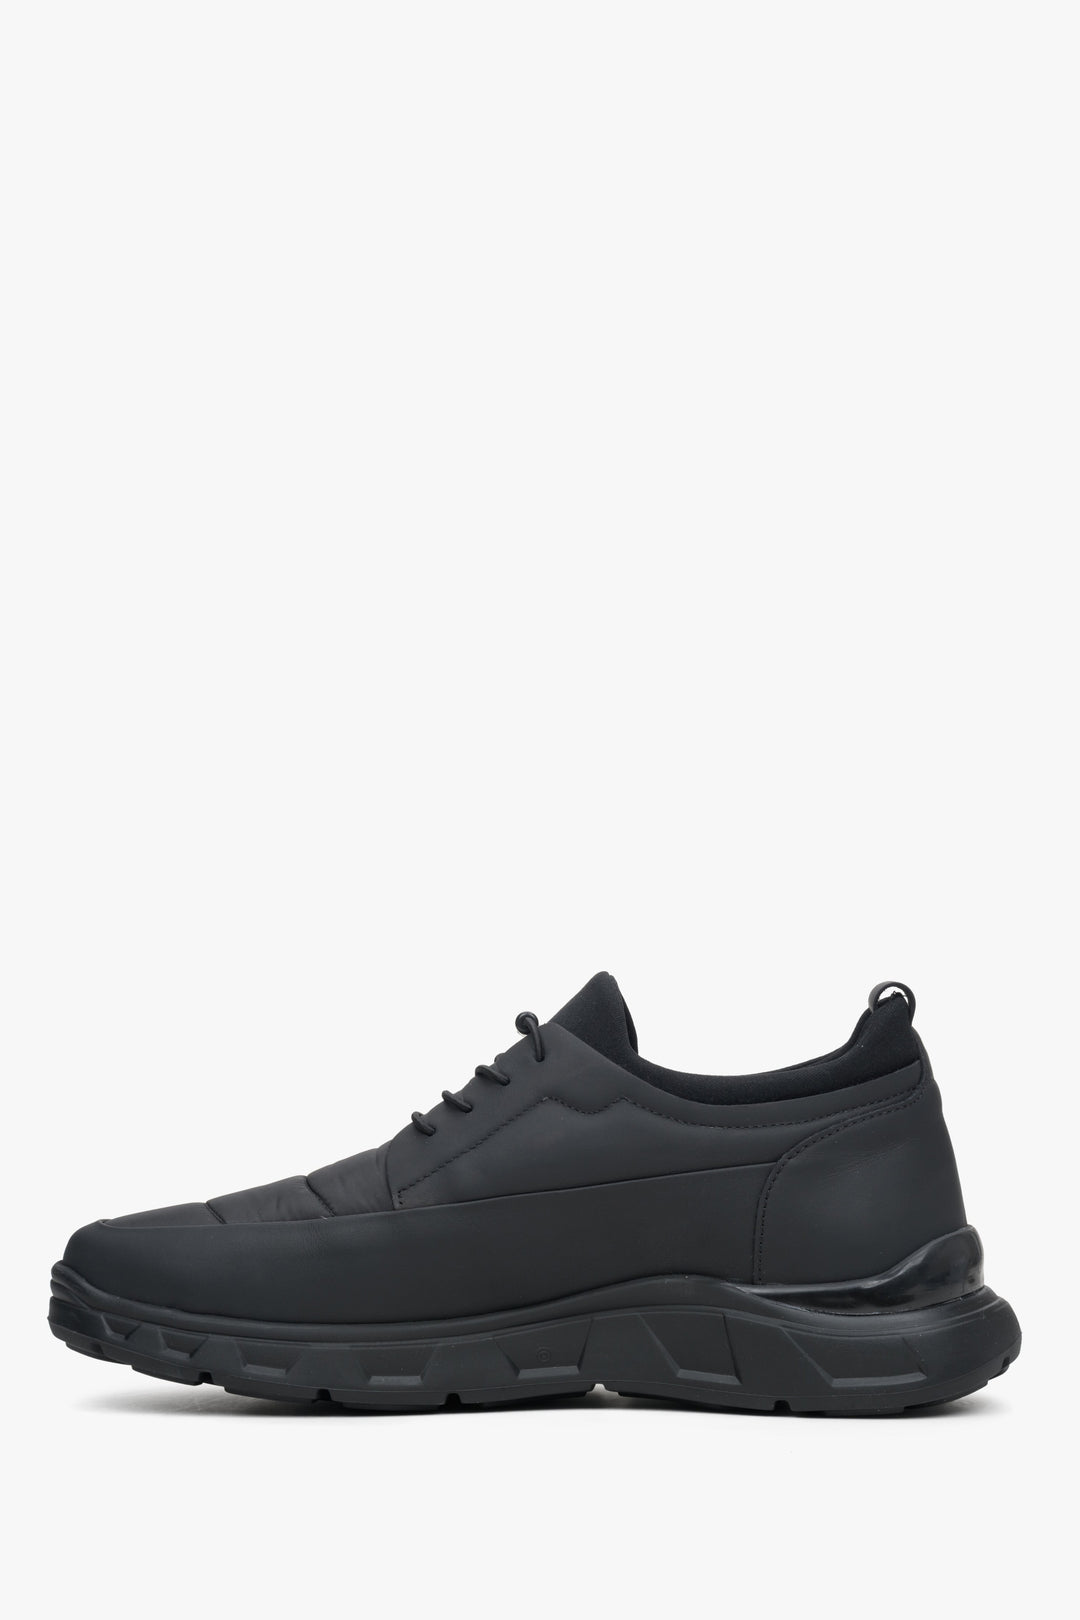 Men's black sneakers with a turnbuckle y Estro - shoe profile.